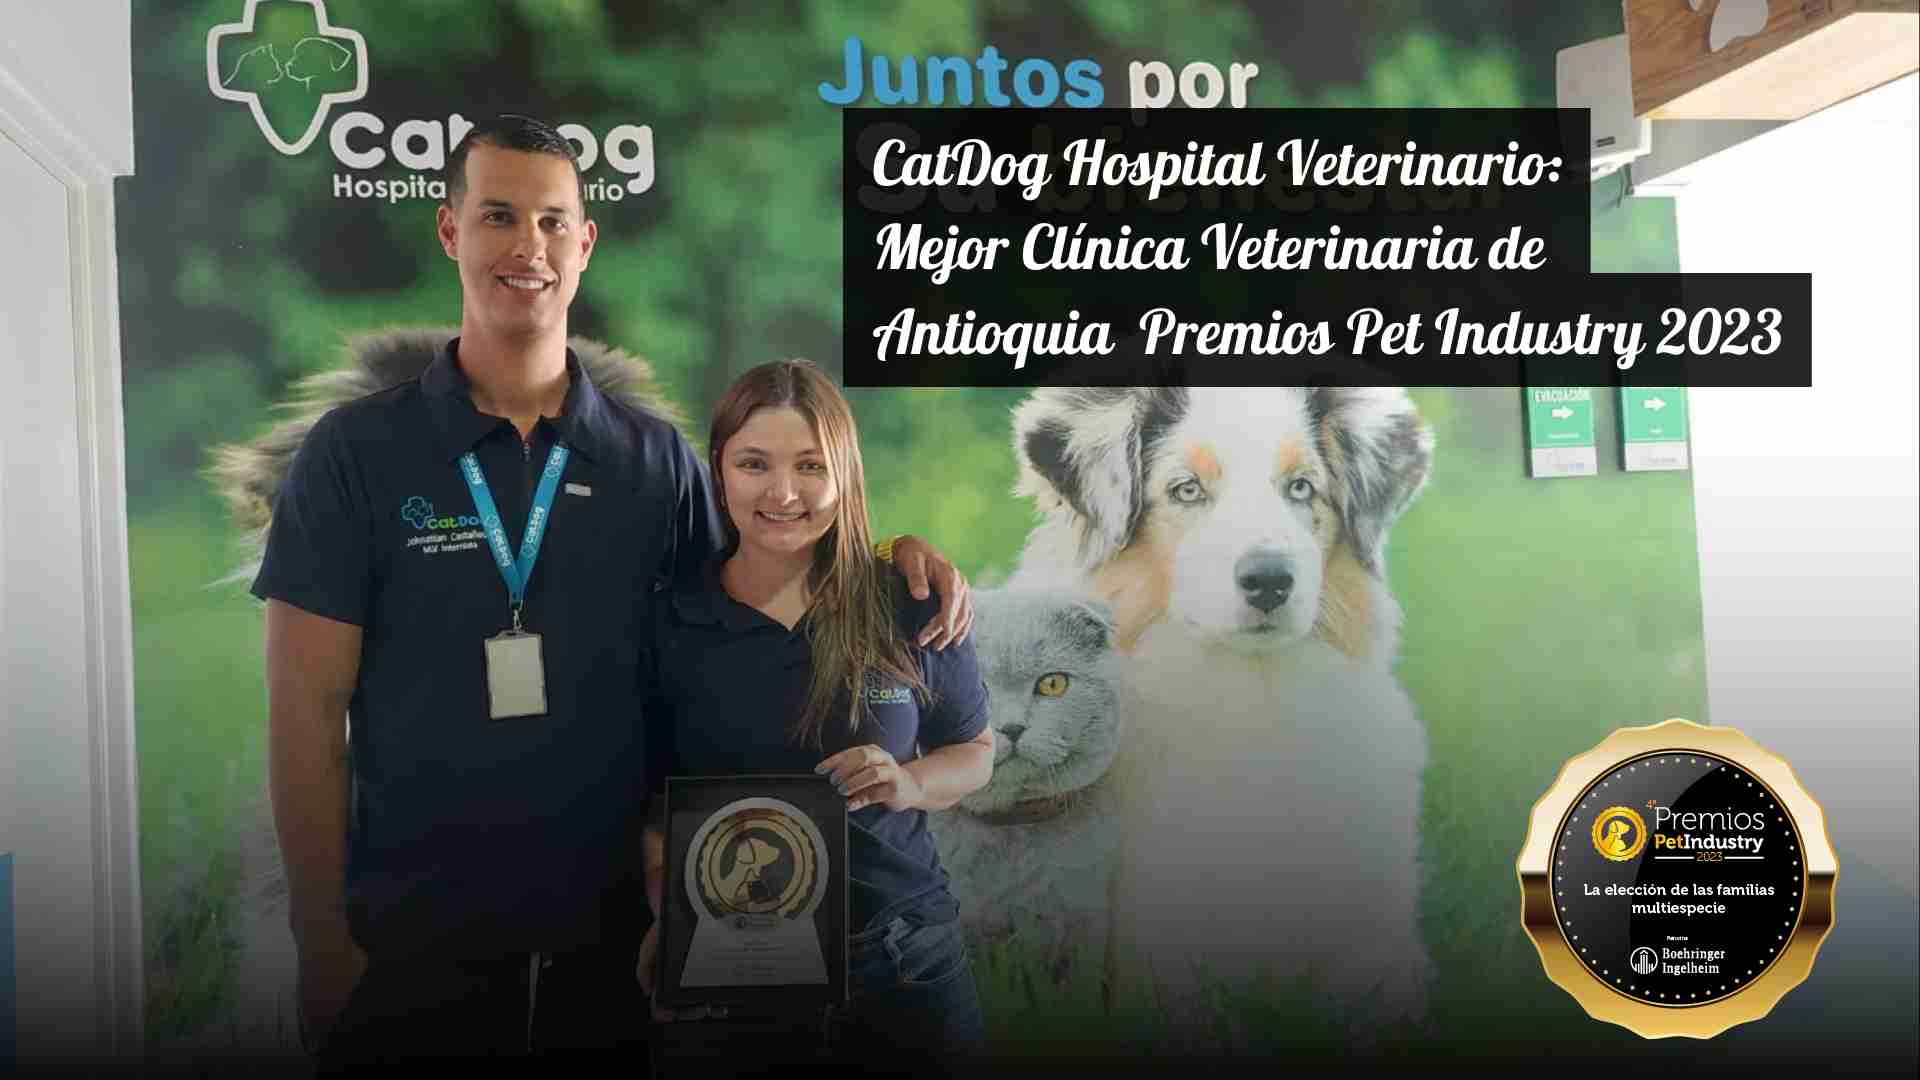 CatDog Hospital Veterinario: Mejor Clínica Veterinaria de Antioquia Premios Pet Industry 2023